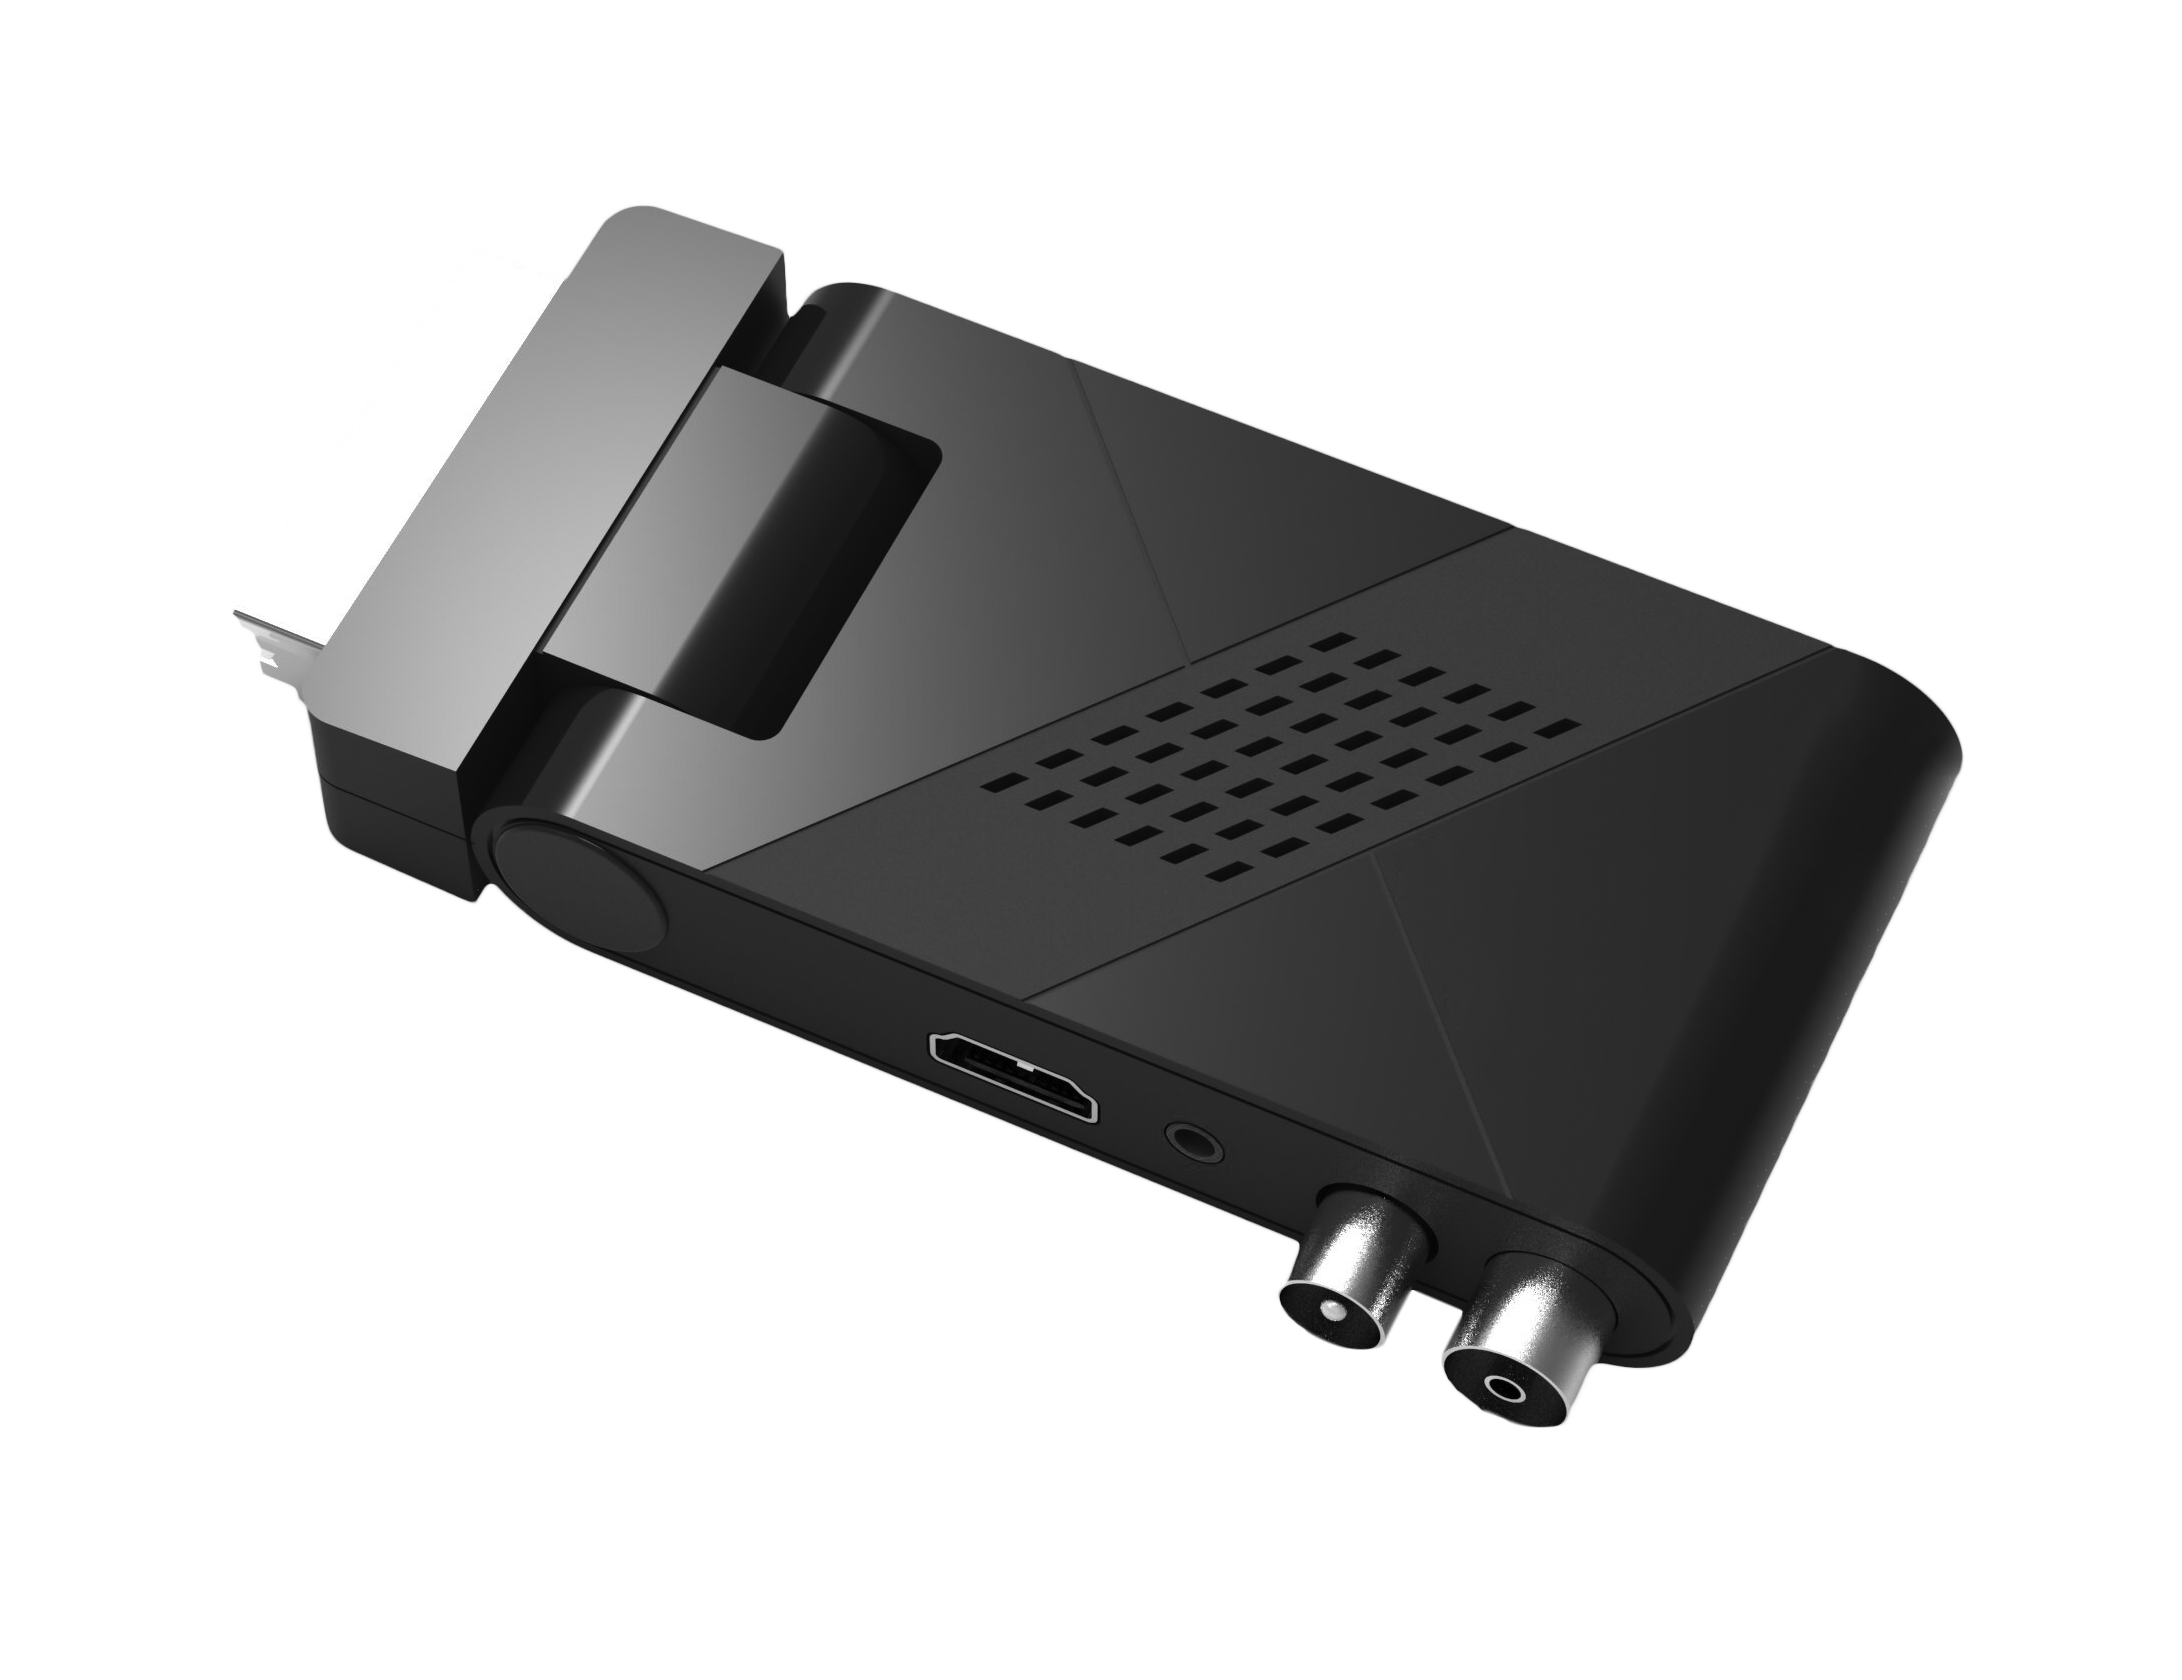 RED OPTICUM AX HD I PVR-Funktion, schwarz) HDMI 5 (HDTV, AIR PVR HD-Receiver Aufnahmefunktion (H.264), Lion Receiver DVB-T2 Receiver DVB-T2 (H.265), DVB-T, DVB-T2 DVB-T2 mit SCART/ DVB-T2 HD 